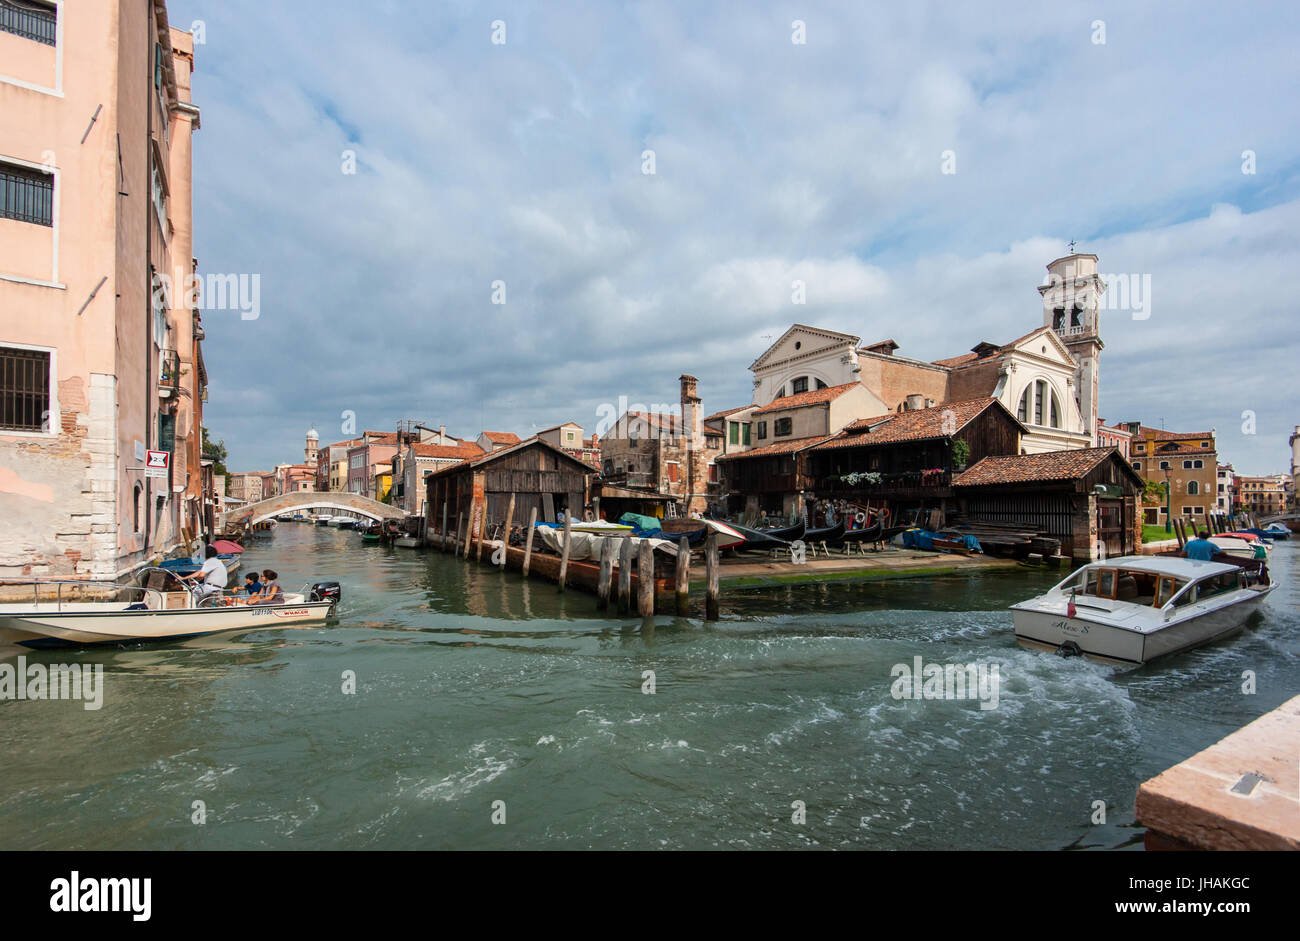 Immagini reali di Venezia: Barche a motore su un canale nel quartiere Dorsoduro con una gondola barca costruire e riparare il cantiere - workshop in background Foto Stock